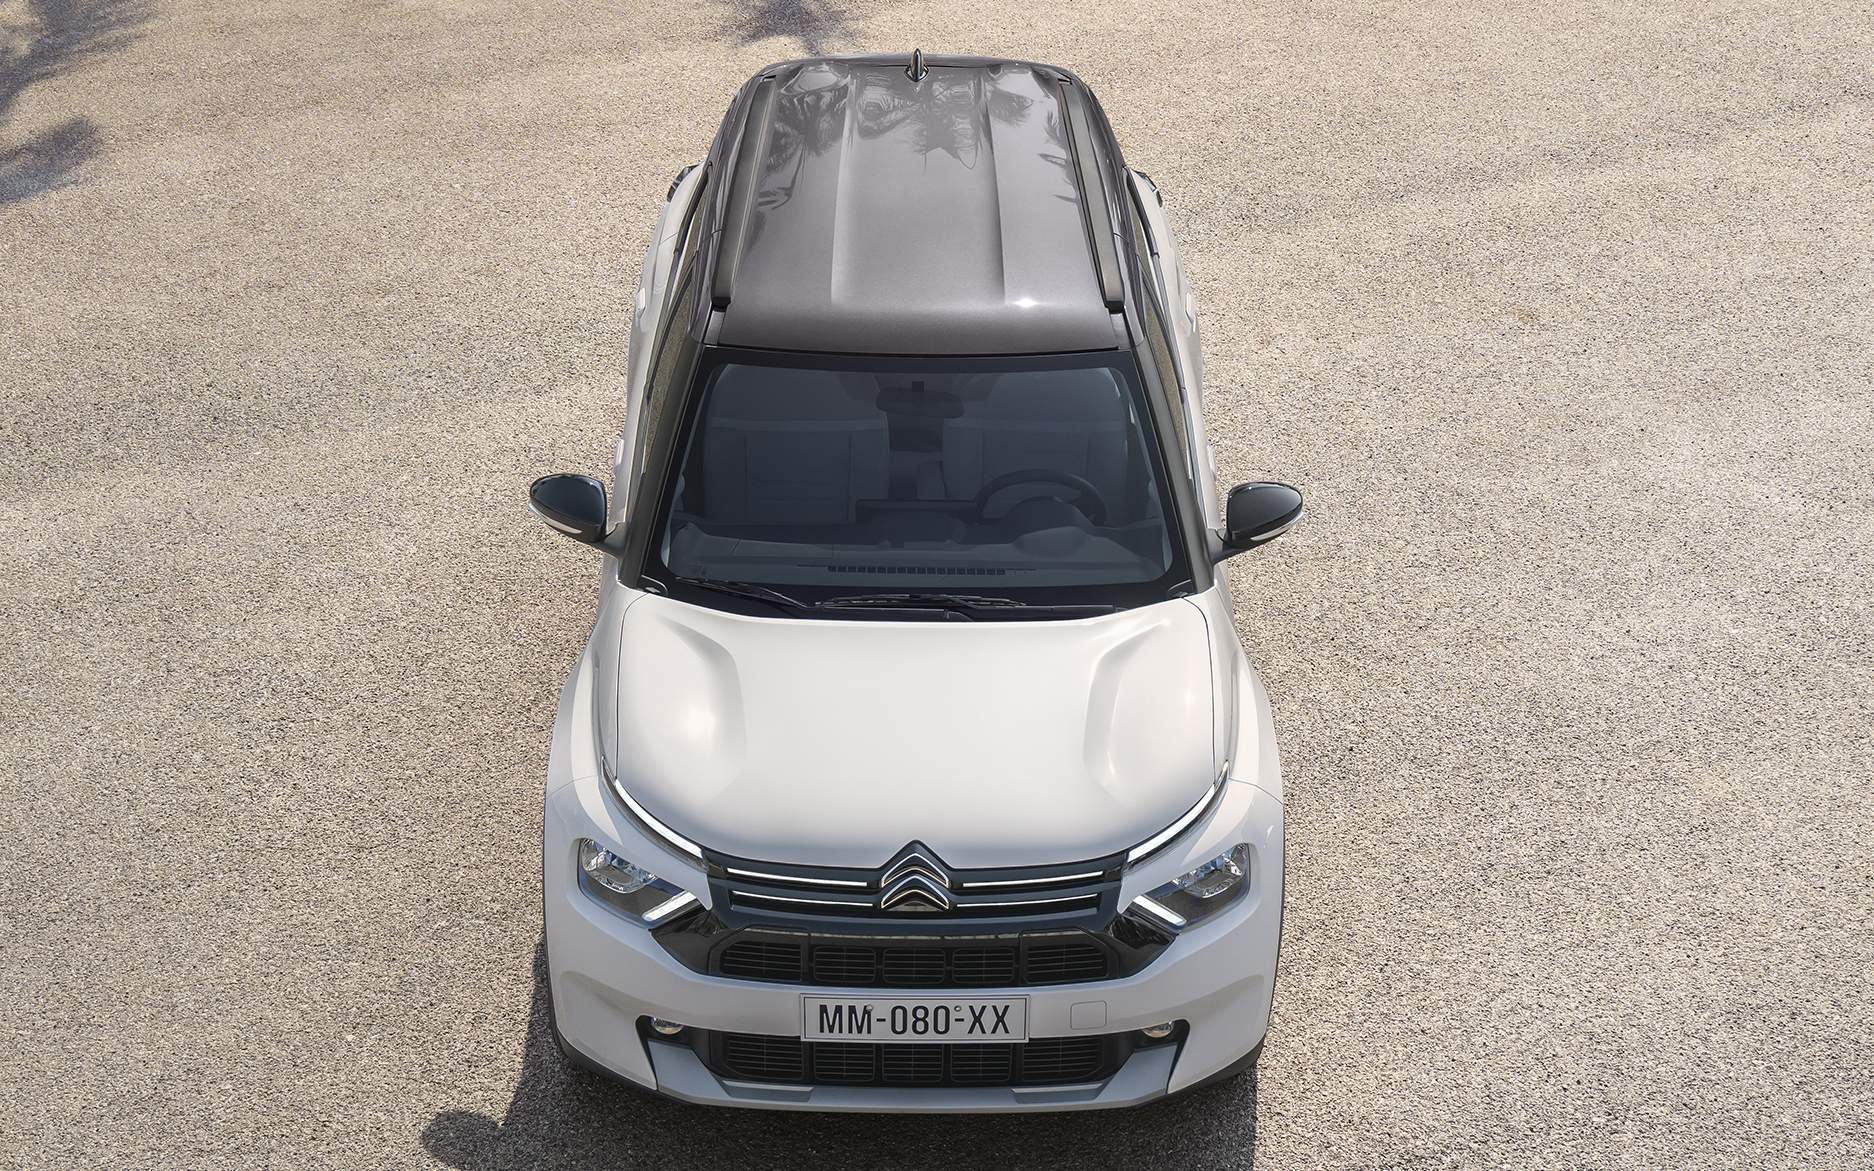 <strong>Novo Citroën C3 Aircross 7 lugares entra para a briga dos SUV’s compactos</strong>